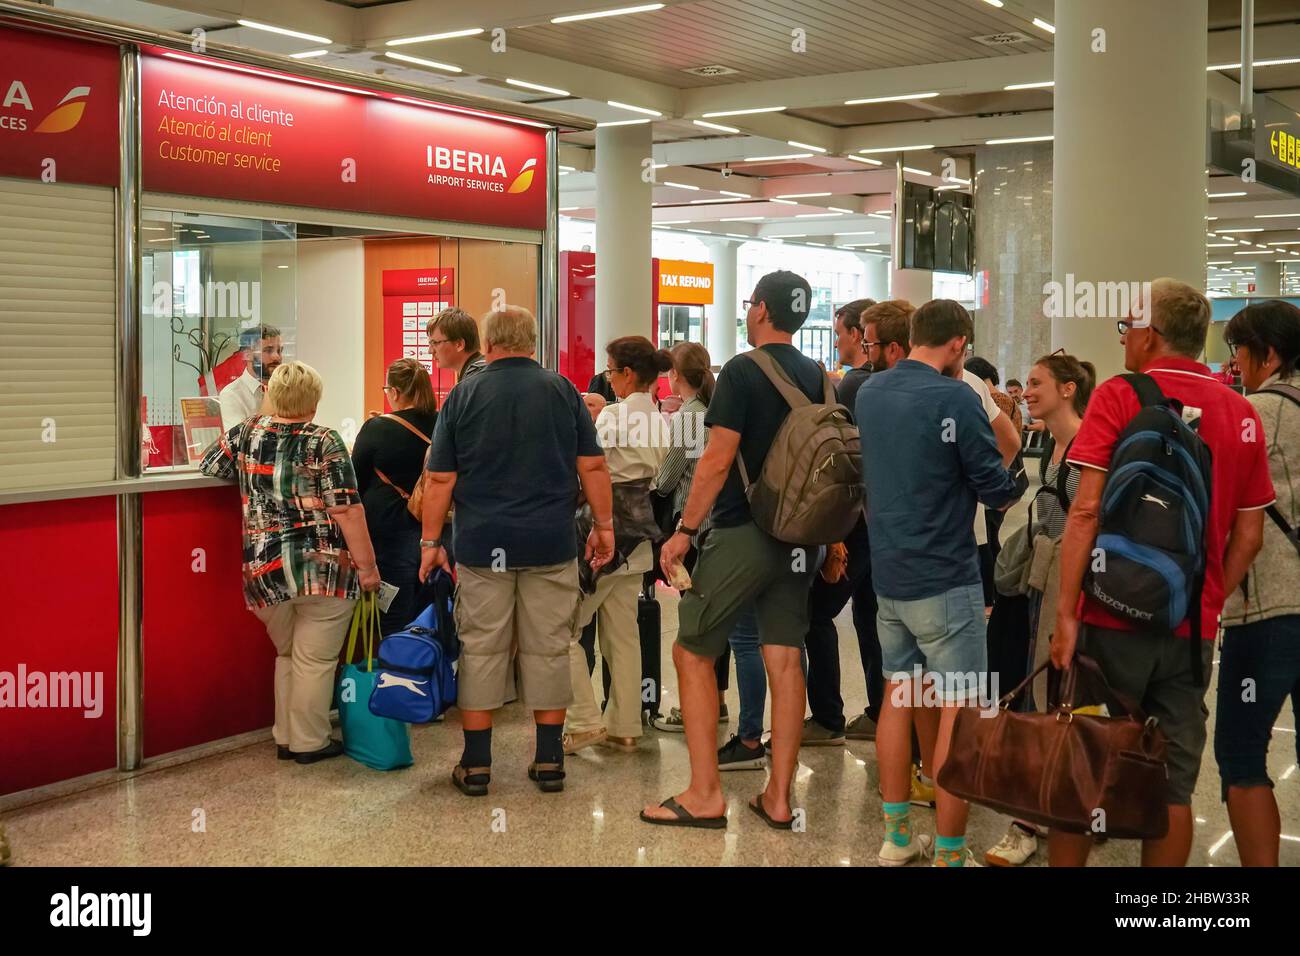 Palma, Spagna - 25 settembre 2019: Passeggeri in attesa in coda presso il chiosco Iberia Customer Services. Iberia compagnie aeree sono la principale compagnia aerea in Spagna, stabilire Foto Stock